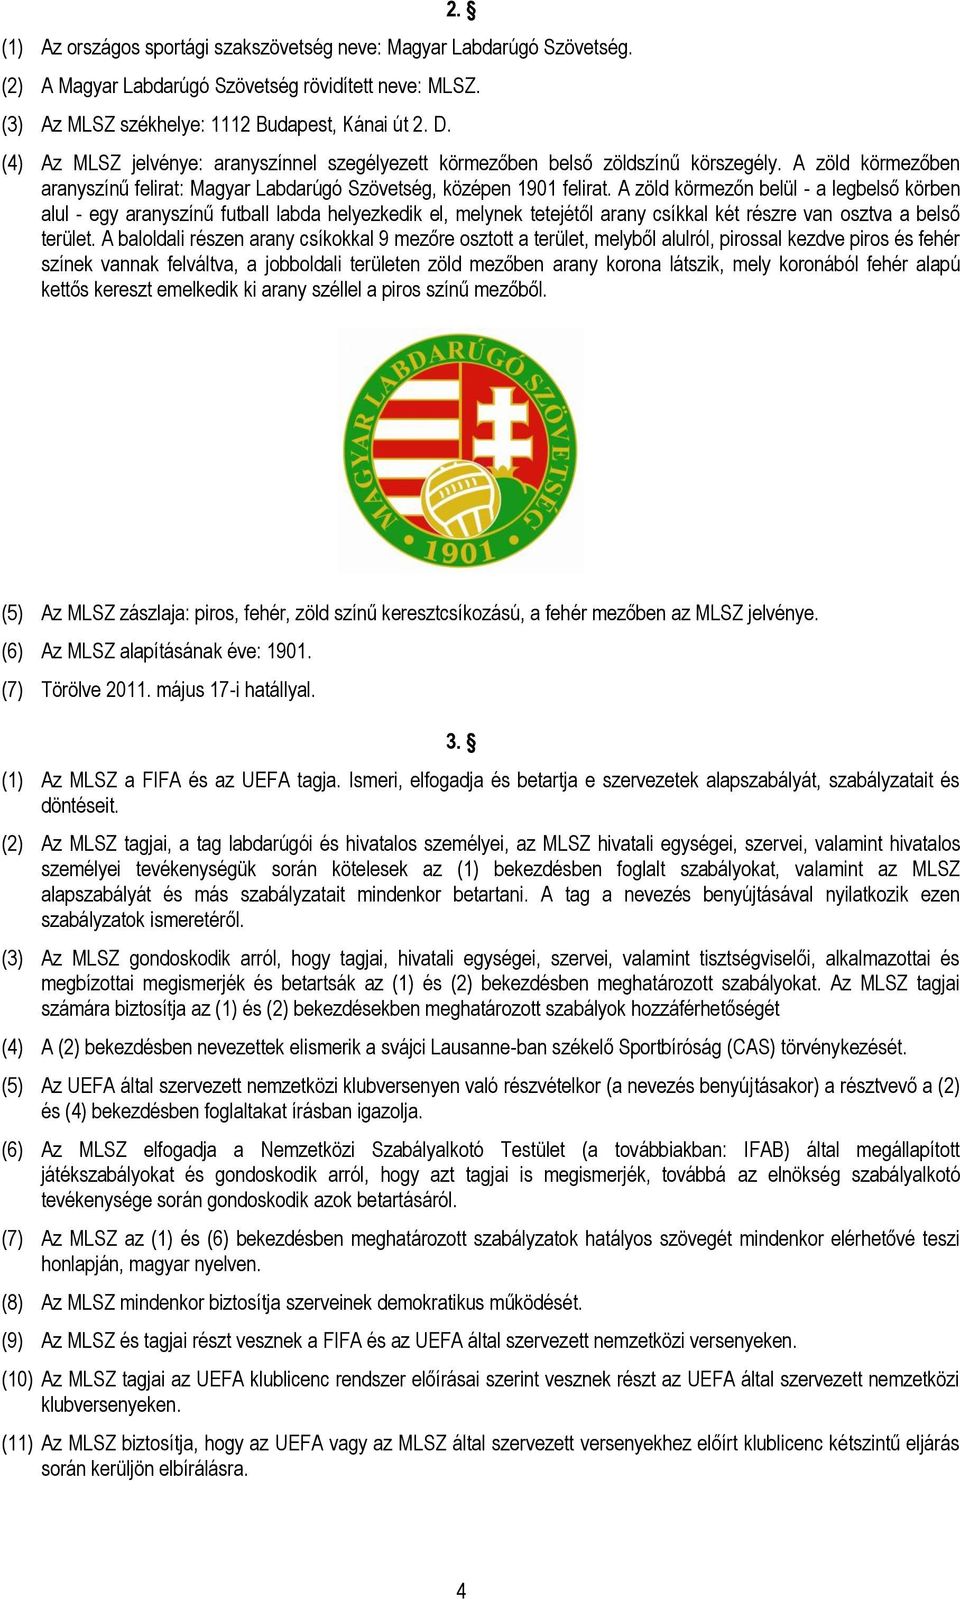 Magyar Labdarúgó Szövetség. Alapszabály - PDF Ingyenes letöltés